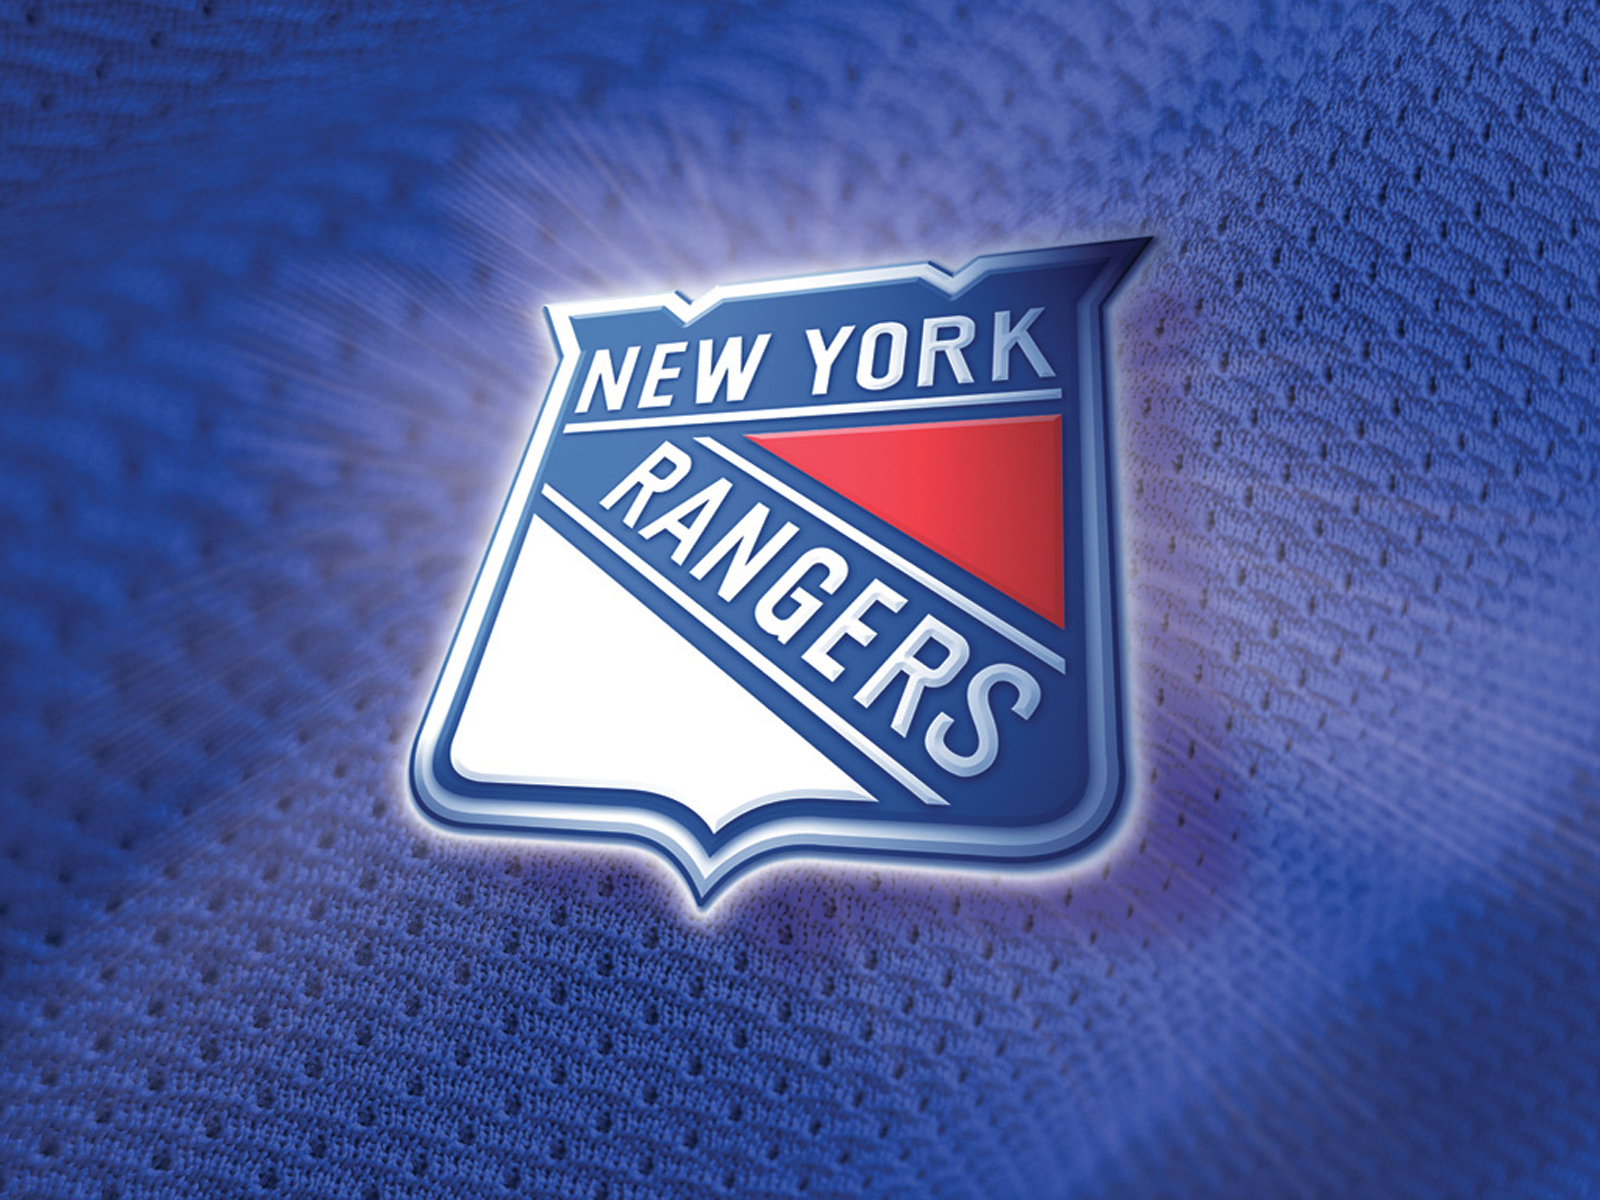 New York Rangers Hockey Puter Desktop Wallpaper Pictures